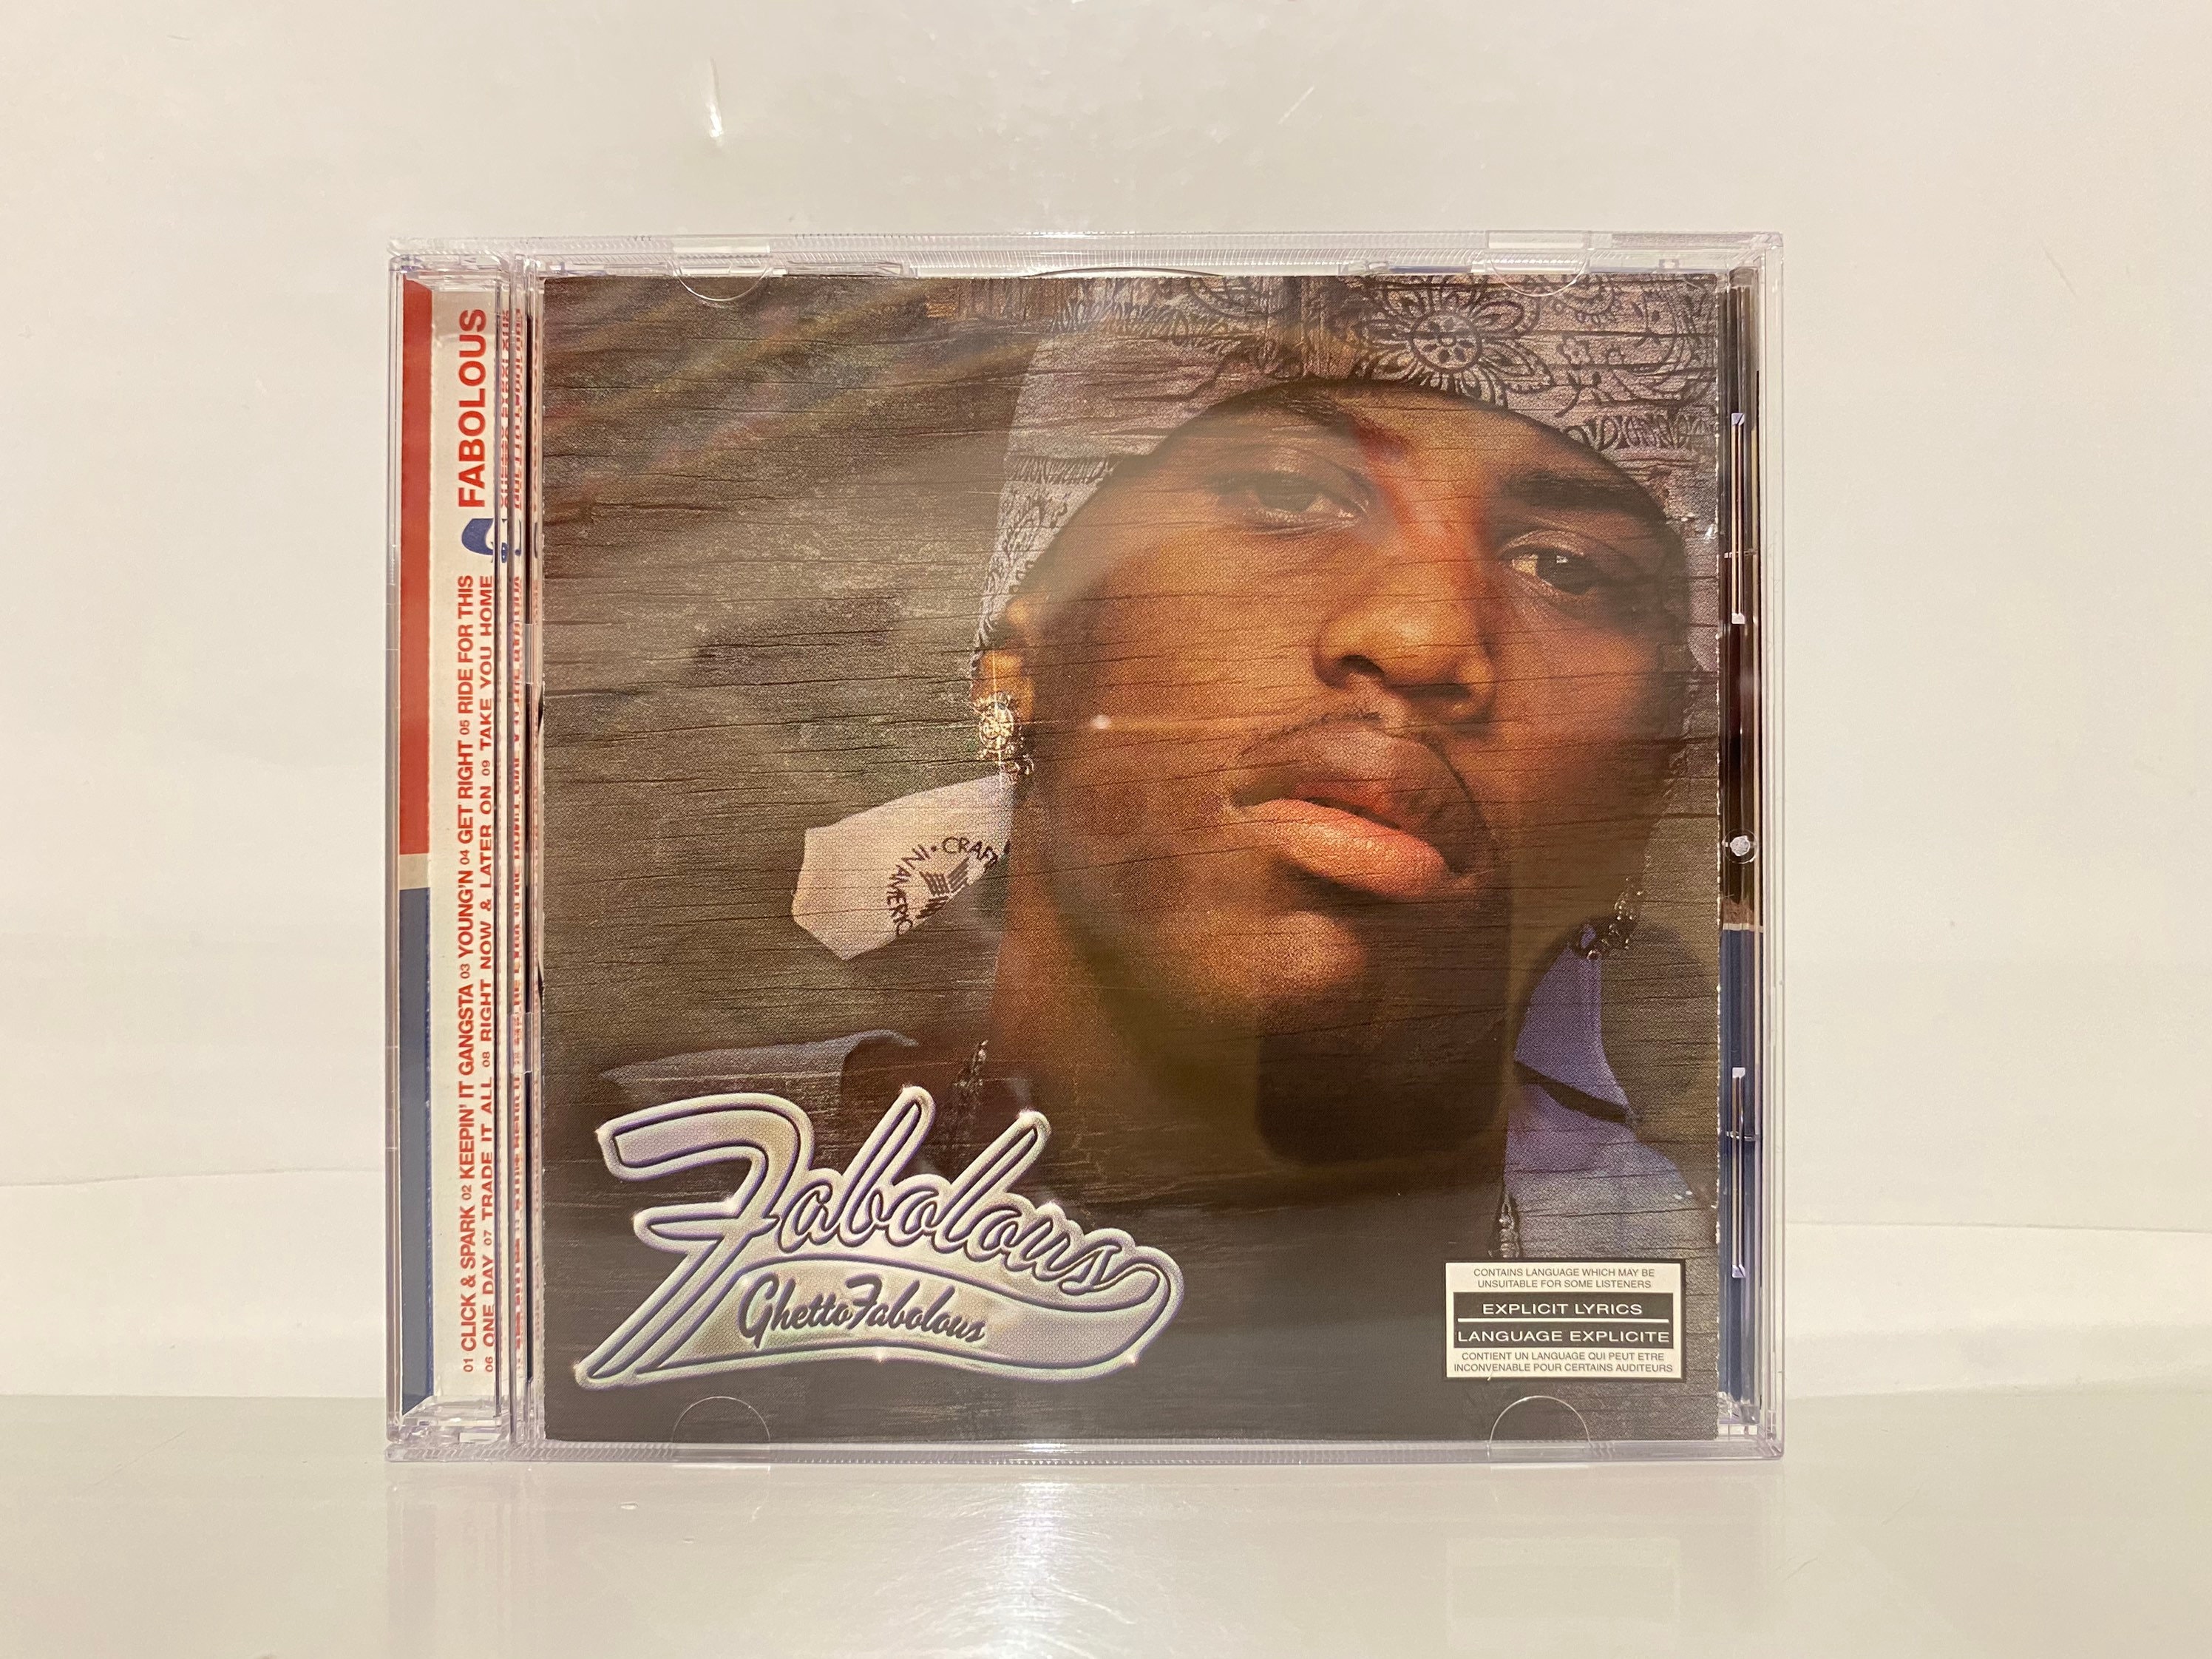 Fabolous CD Collection Album Ghetto Fabolous Genre Hip Hop - Etsy ...